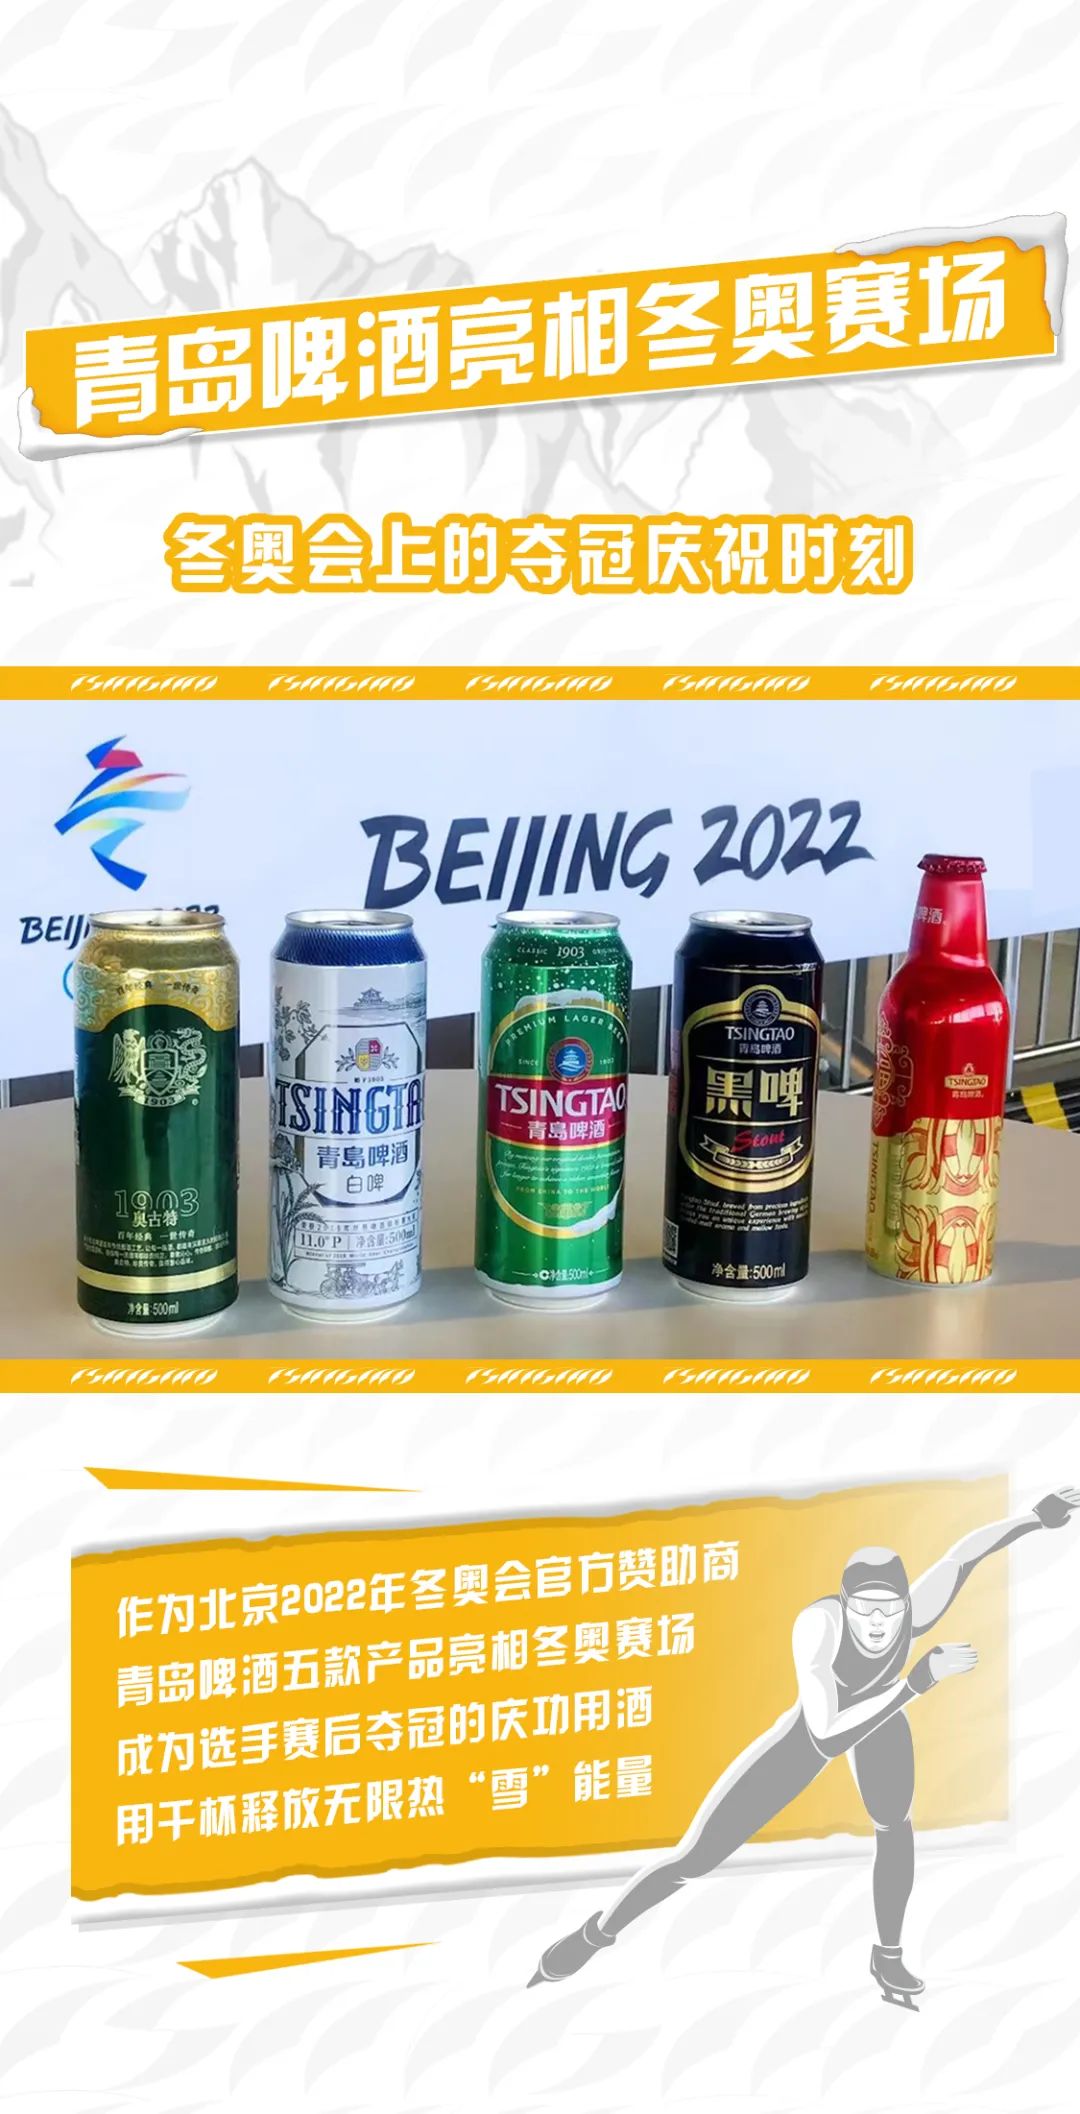 点燃心中冰雪激情——回首青岛啤酒助威北京冬奥的精彩瞬间